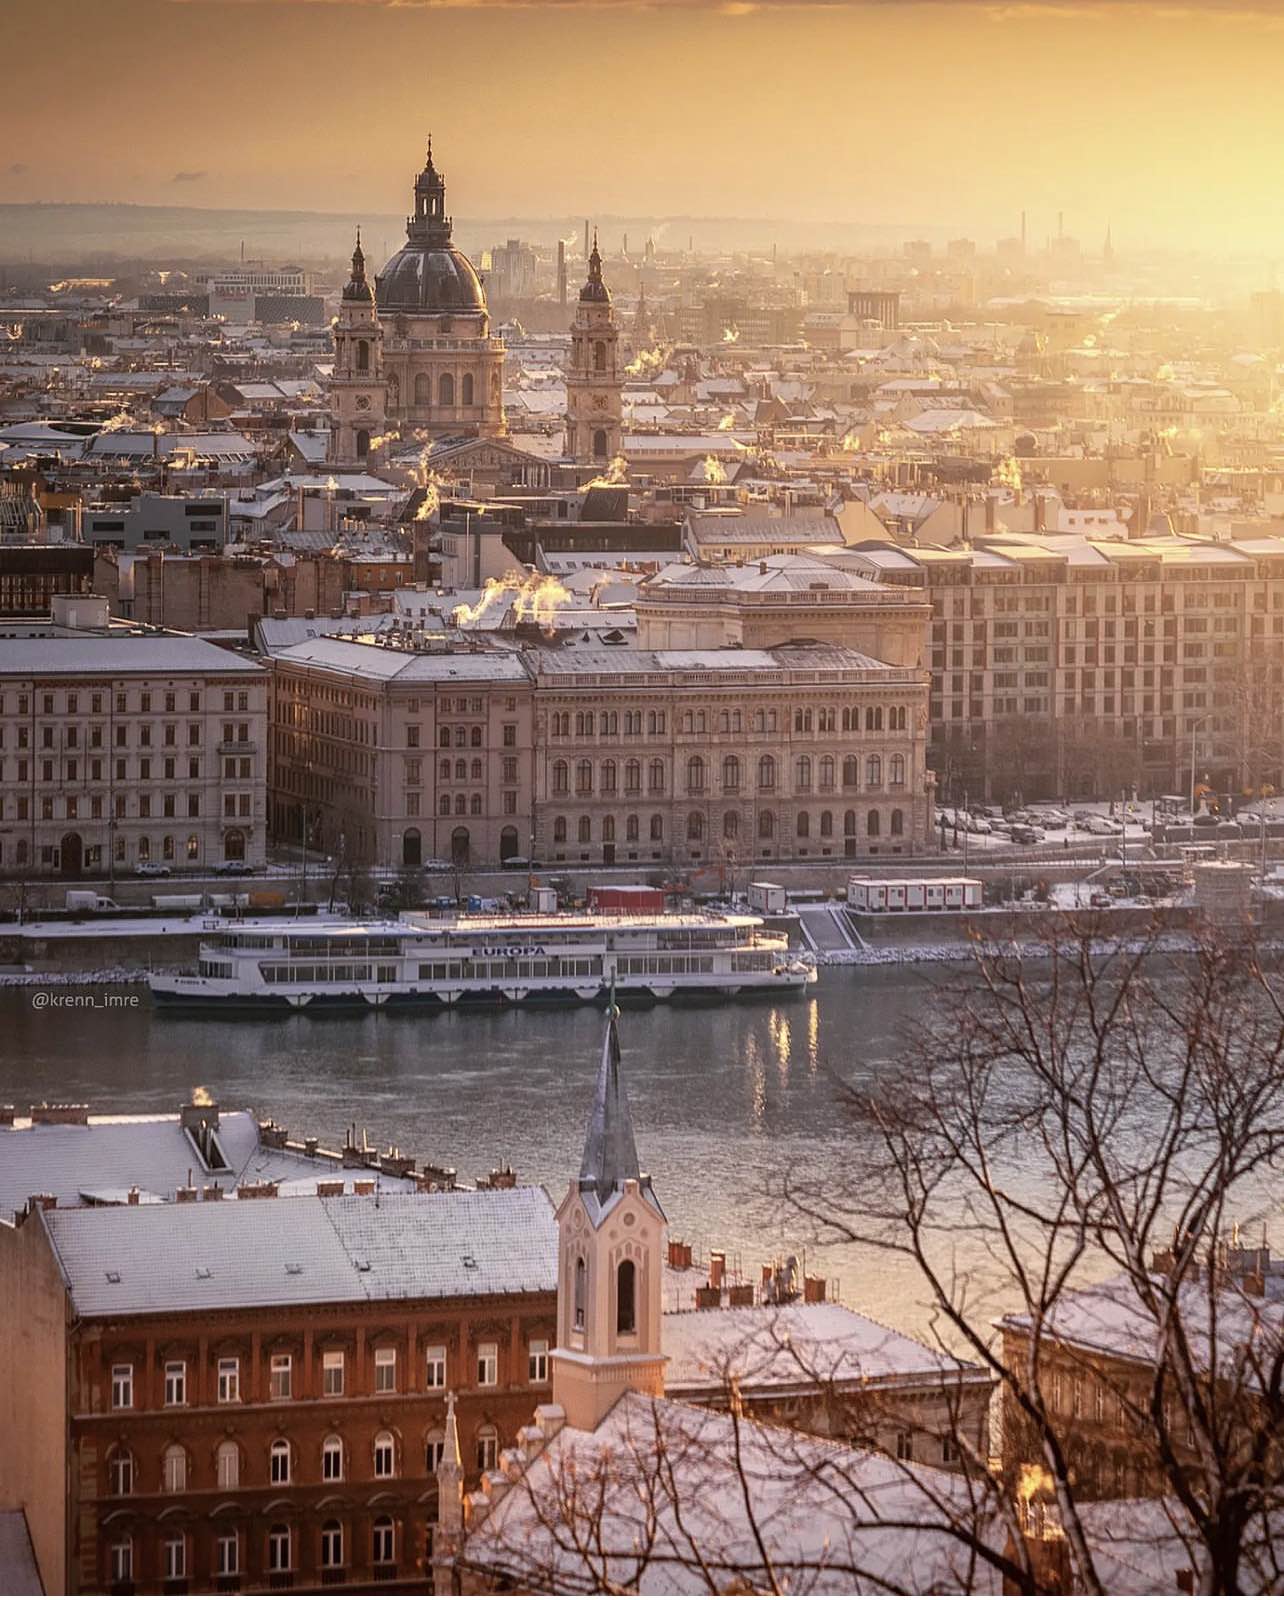 Budapest by Krenn_imre